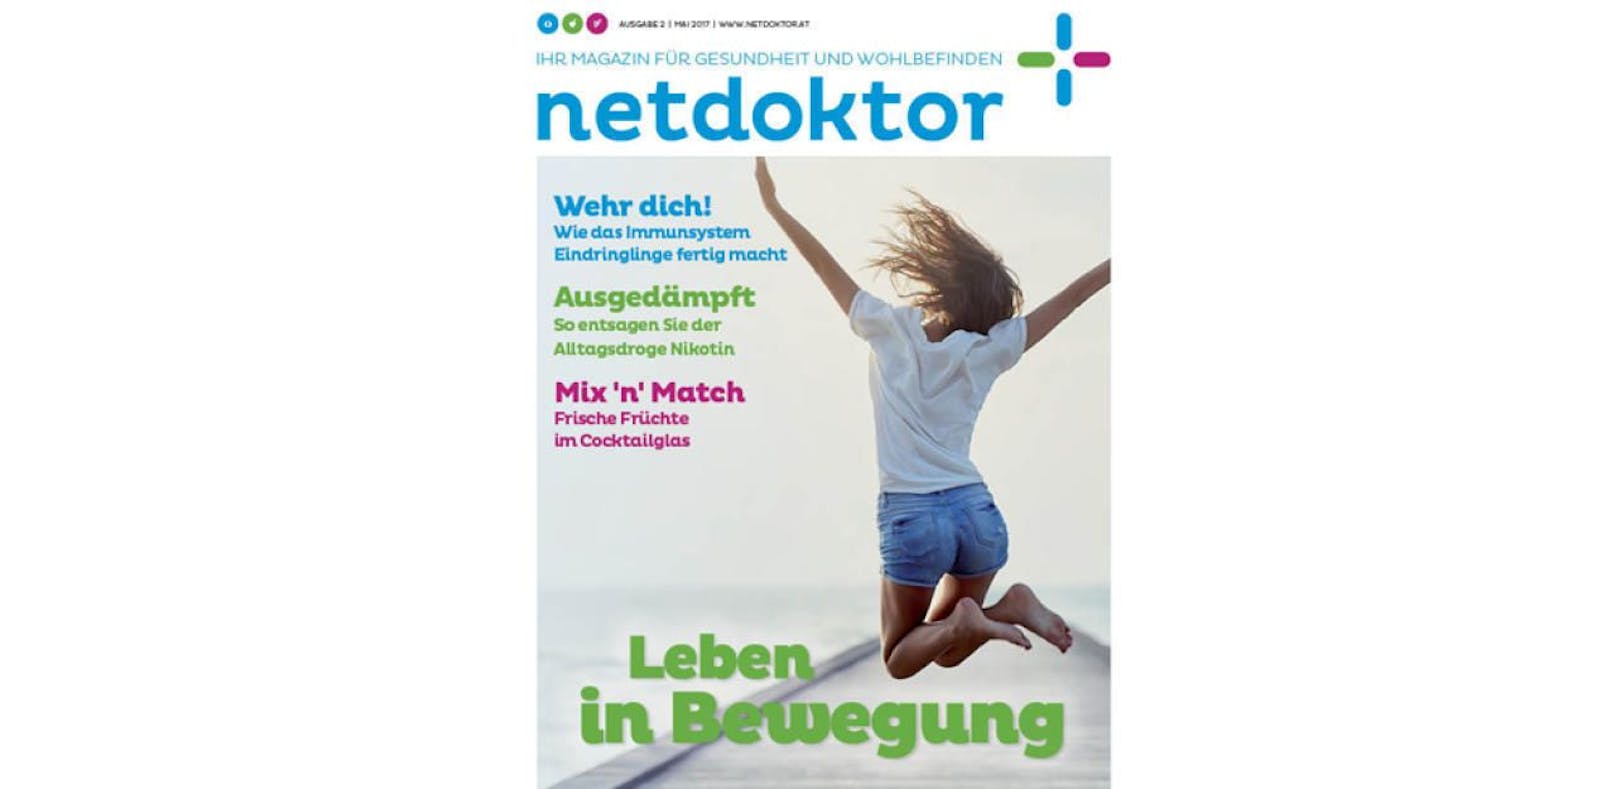 Die Sommerausgabe des netdoktor-Magazins gibt's am Wochenende.